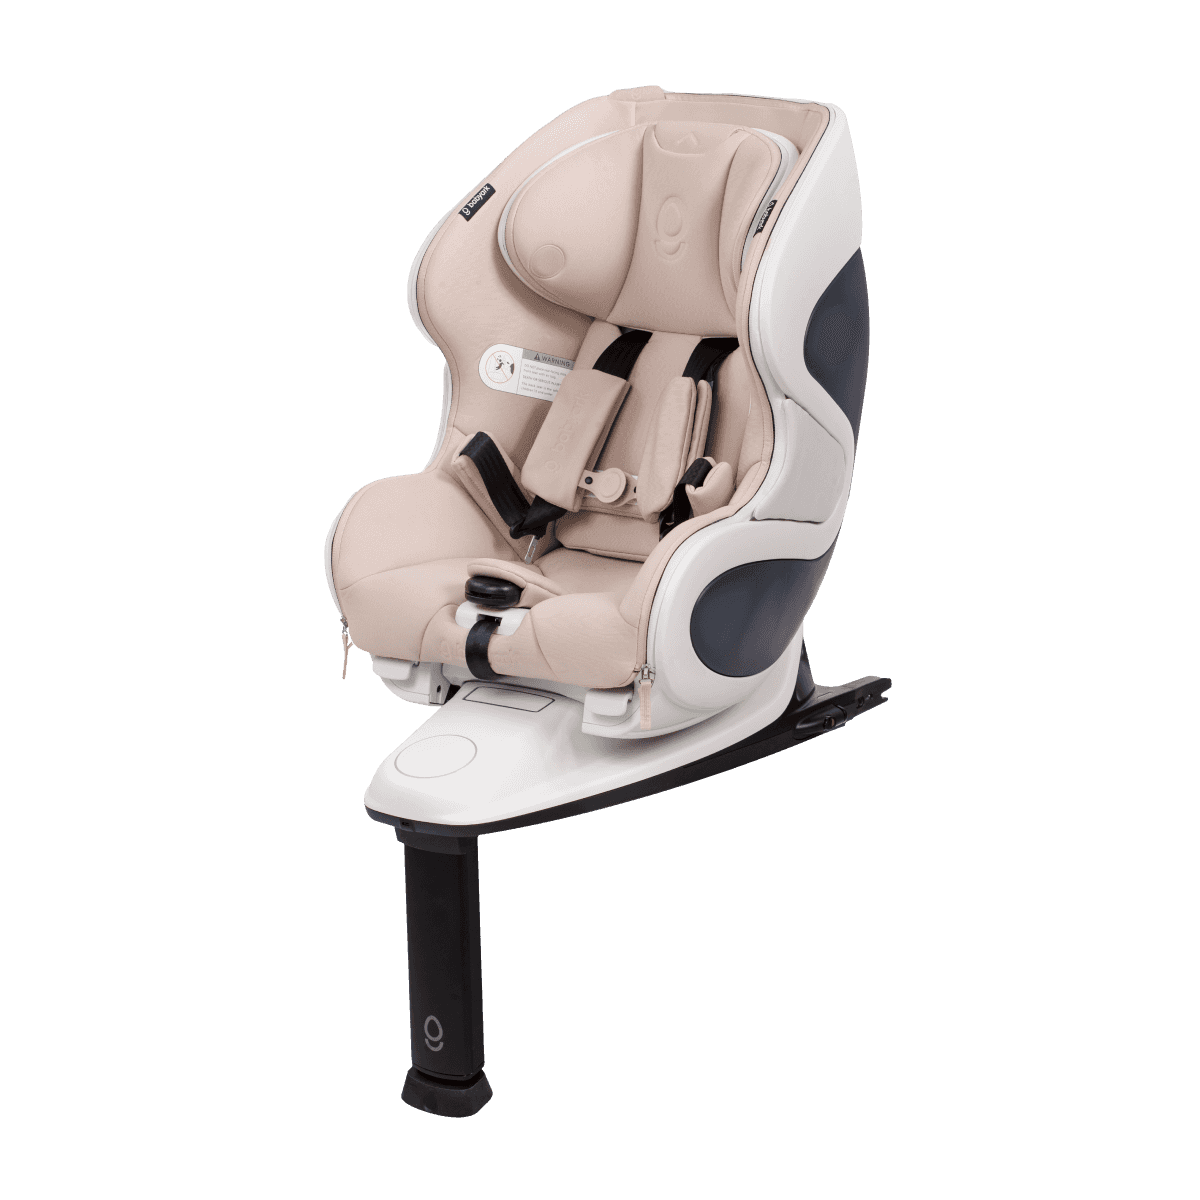 babyark Convertible Car Seat- Premium